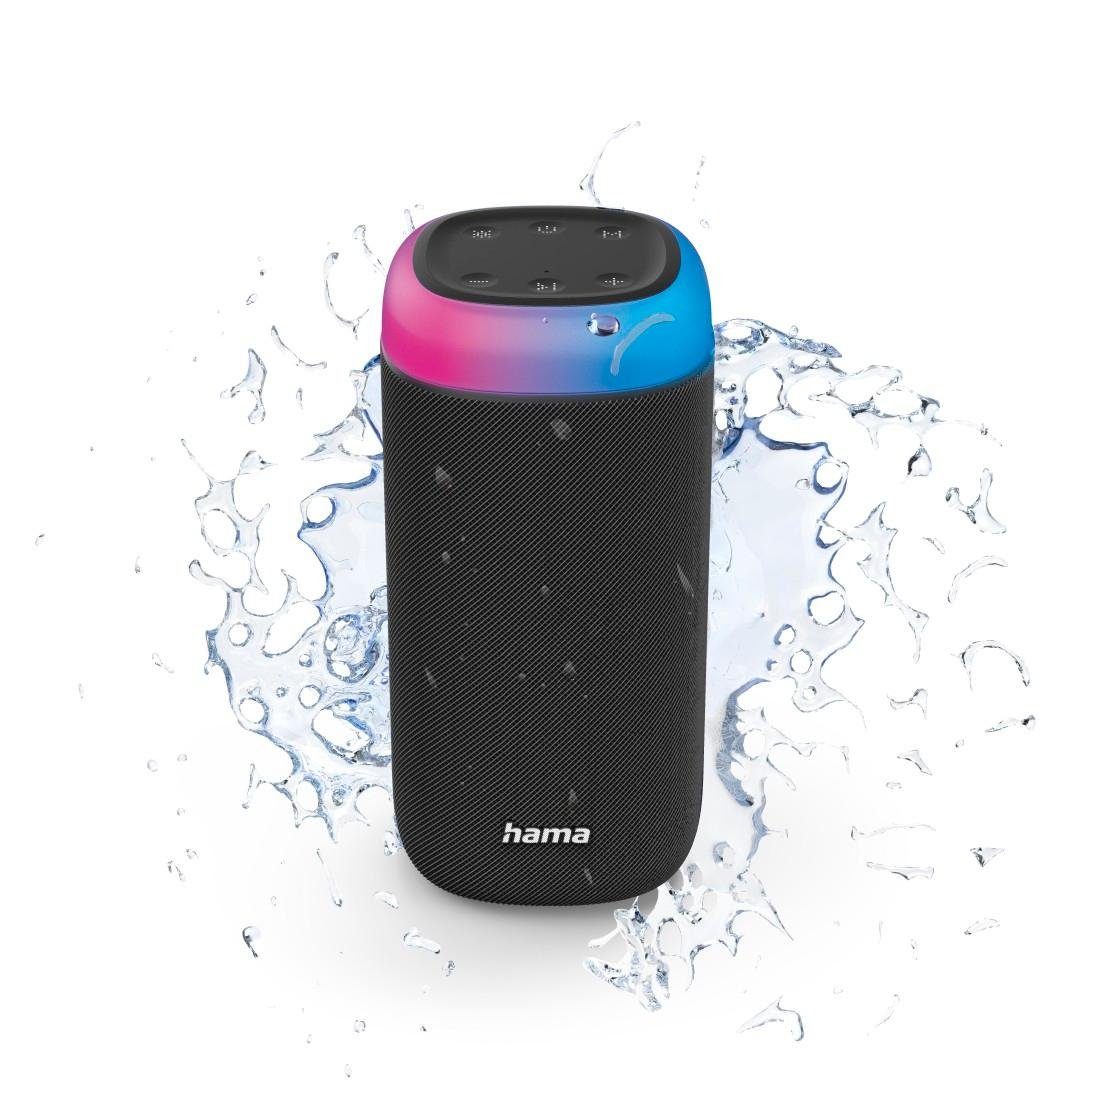 LED Box Bass Xtra Sound schwarz spritzwassergeschützt Bass,360ᵒ (Freisprechanlage,Xtra Bluetooth-Lautsprecher Sound) Hama Shine Bluetooth 2.0 360ᵒ